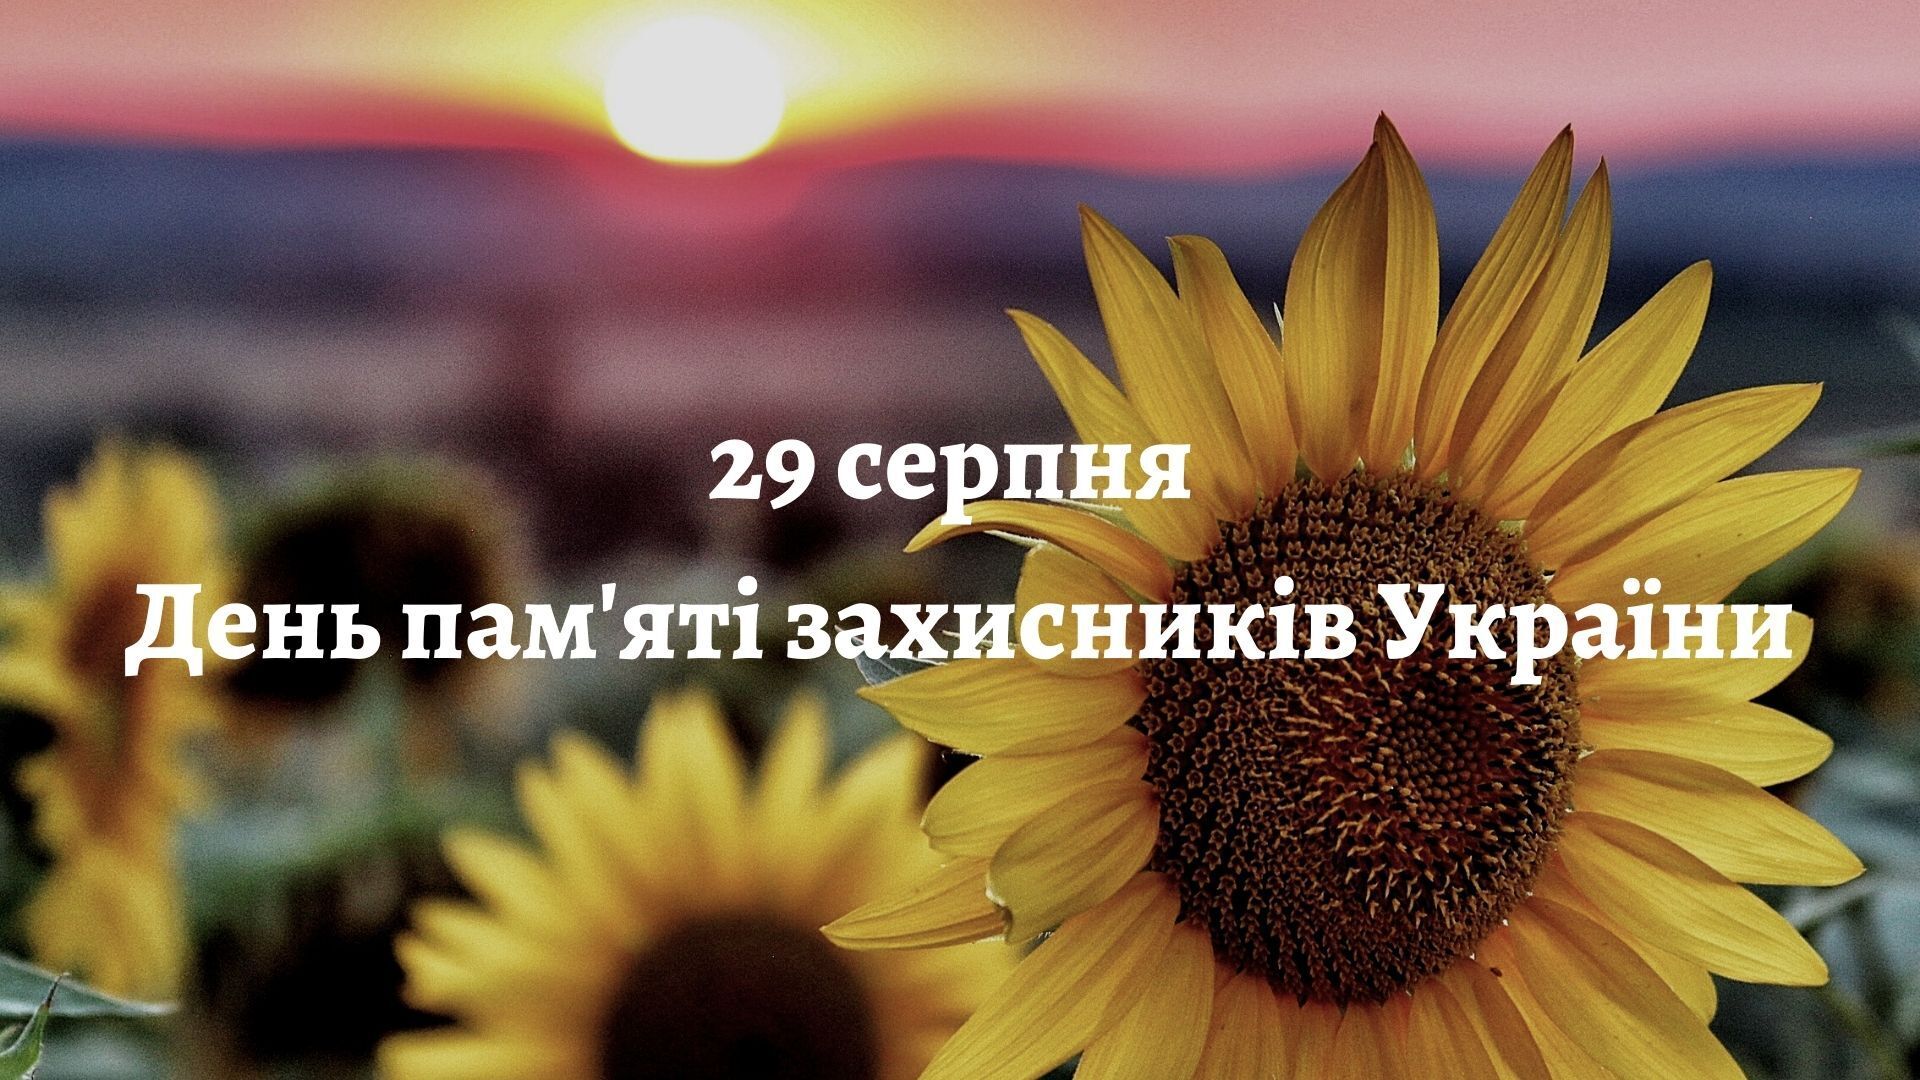 День памяти защитников Украины отмечается 29 августа